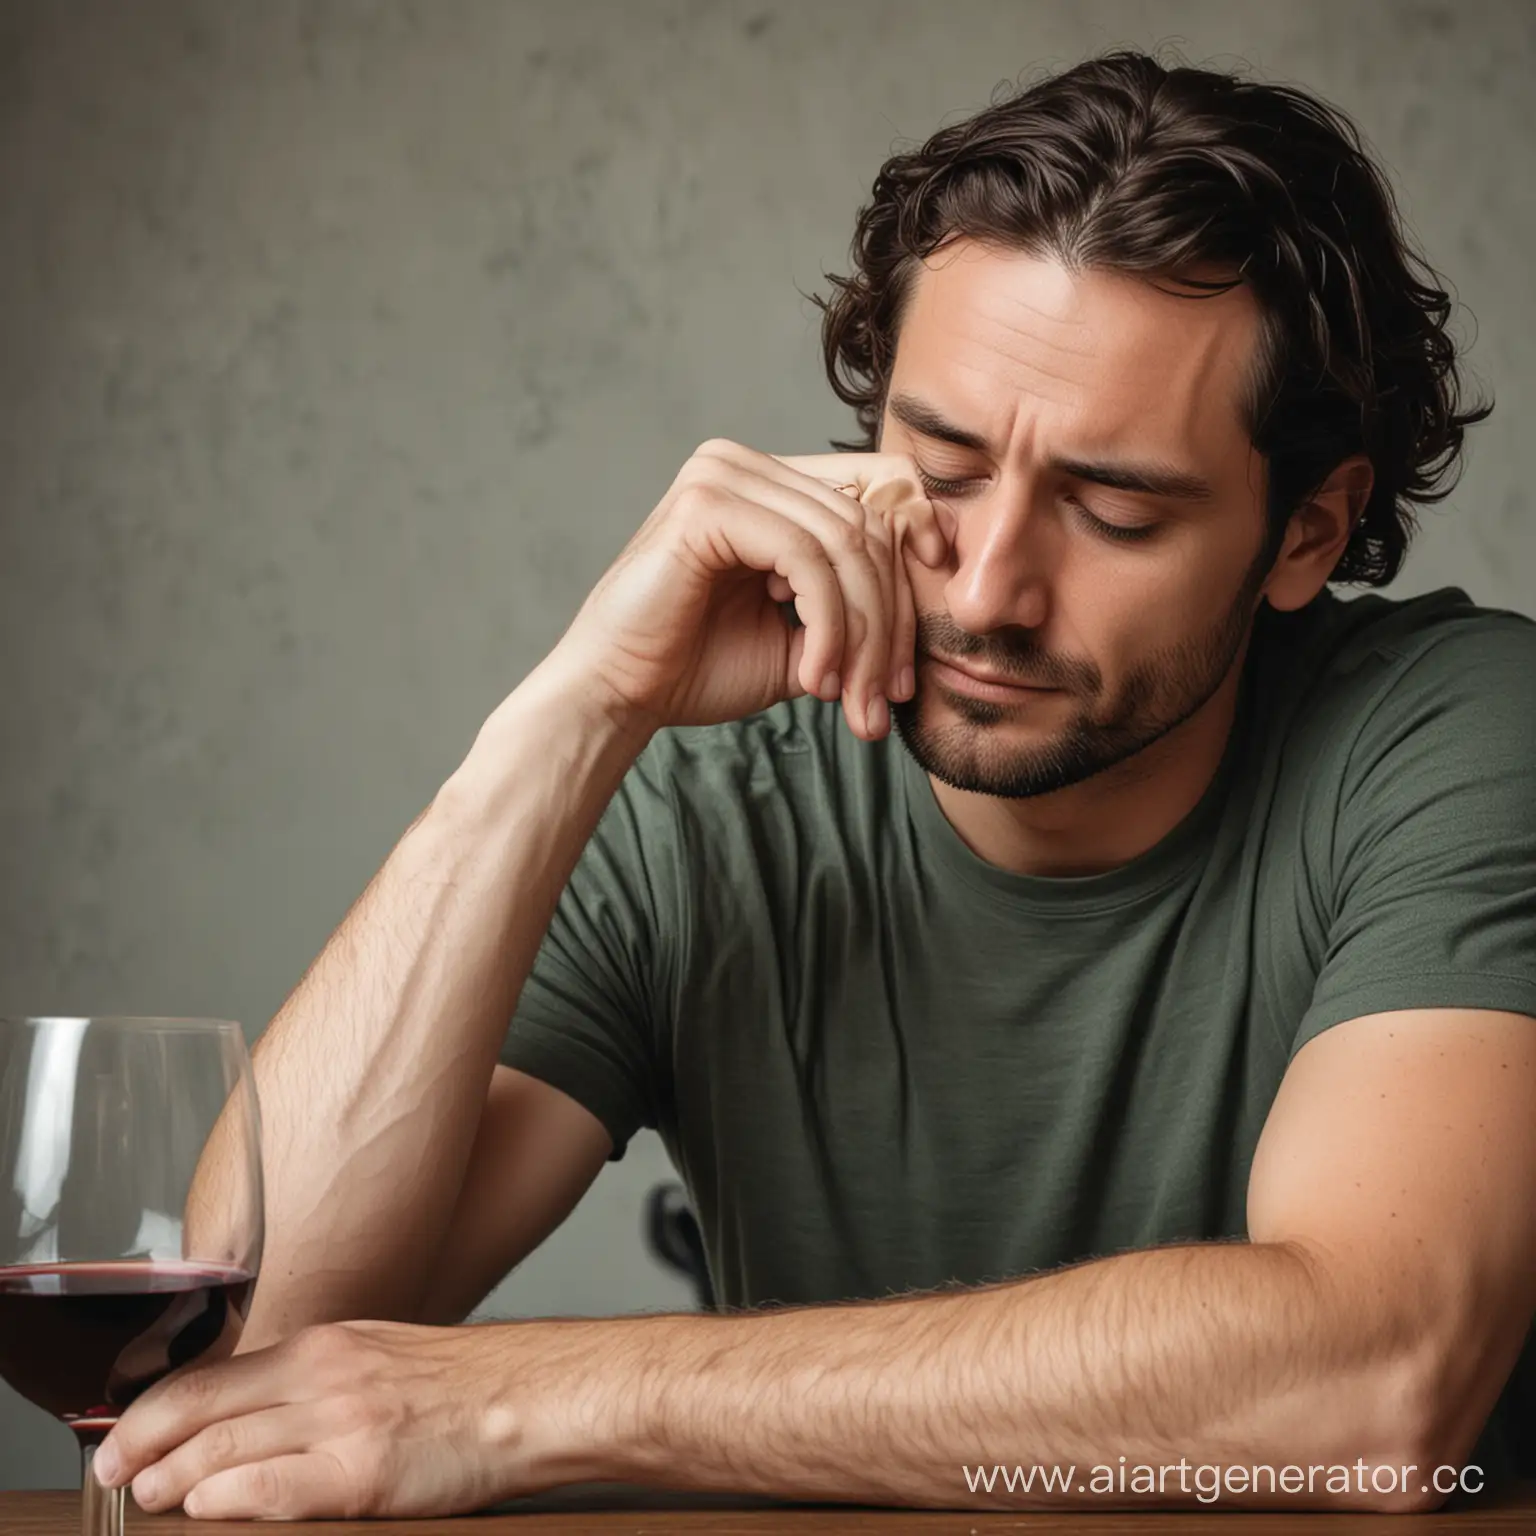 Мужчина сидит боком, пьет вино, упирается рукой в голову и грустит из-за женщины